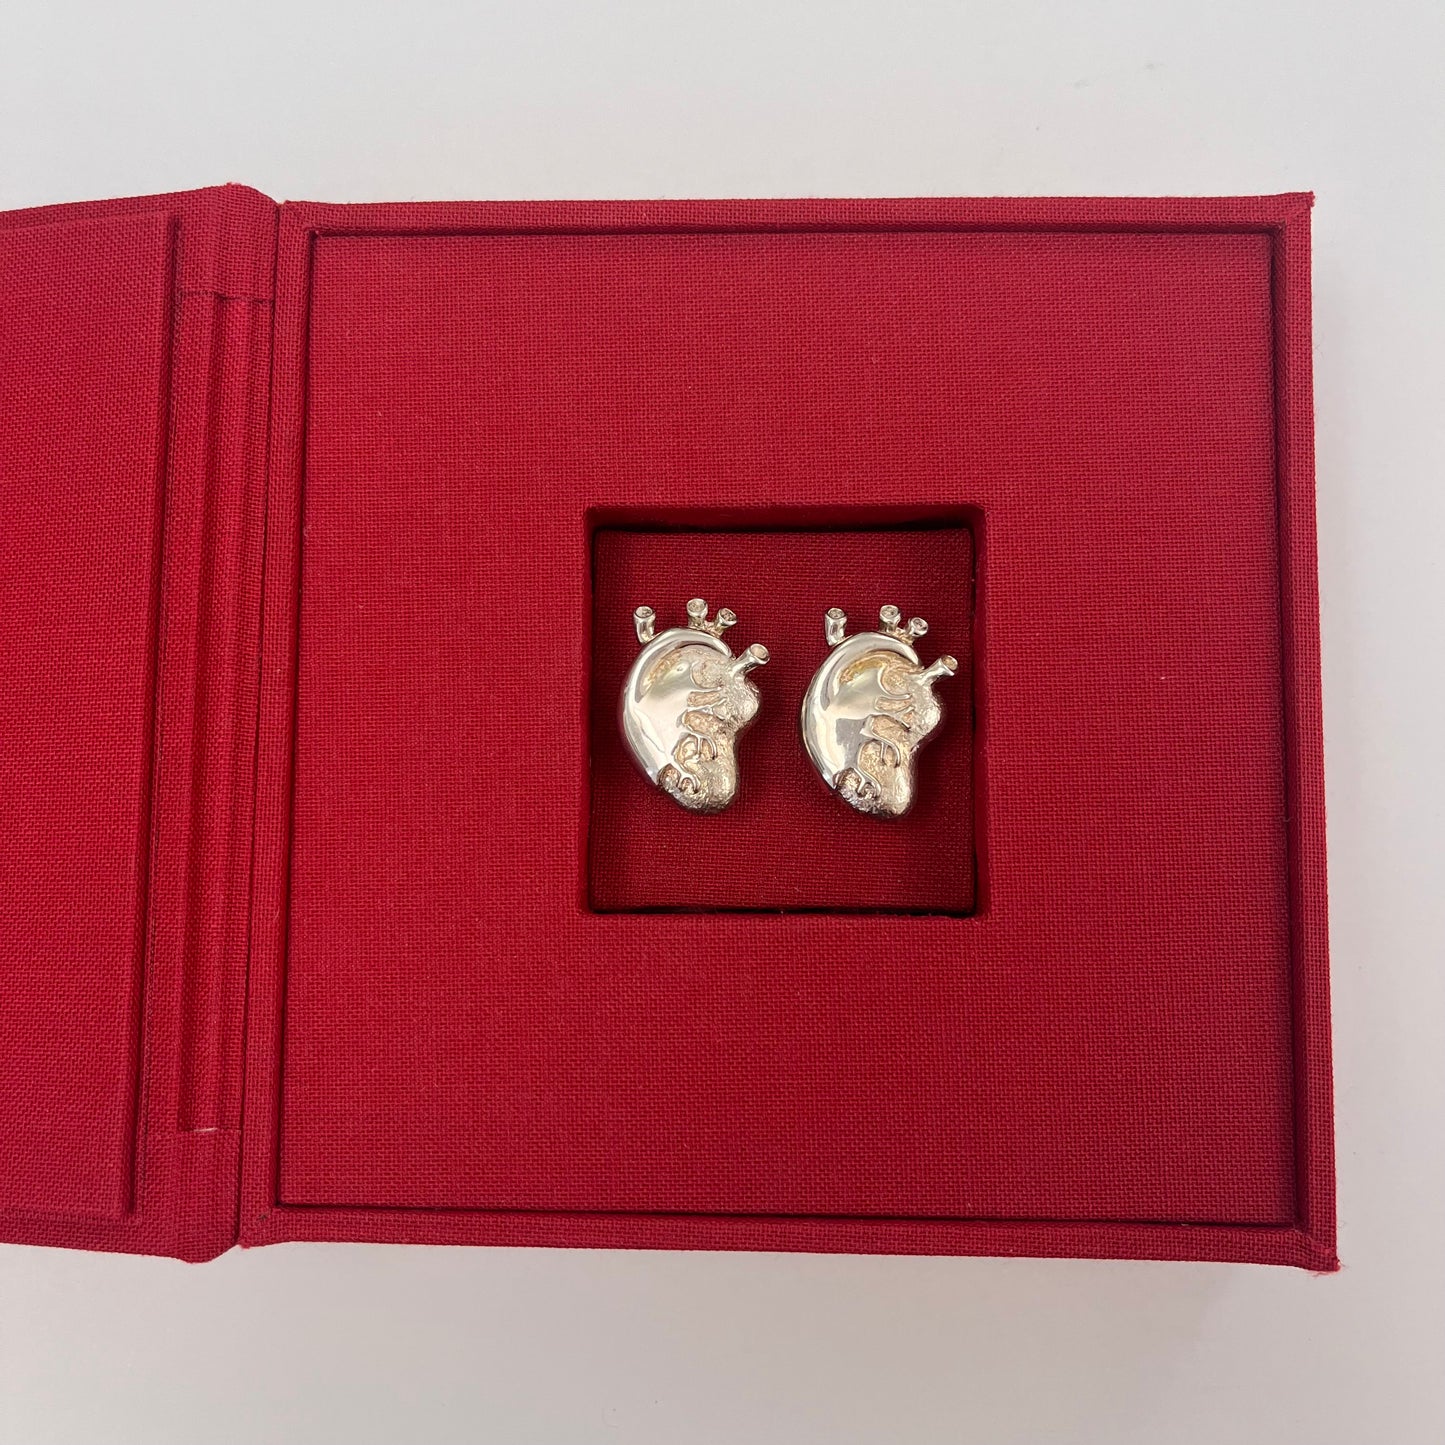 Heart Earrings by Mercedes Gertz